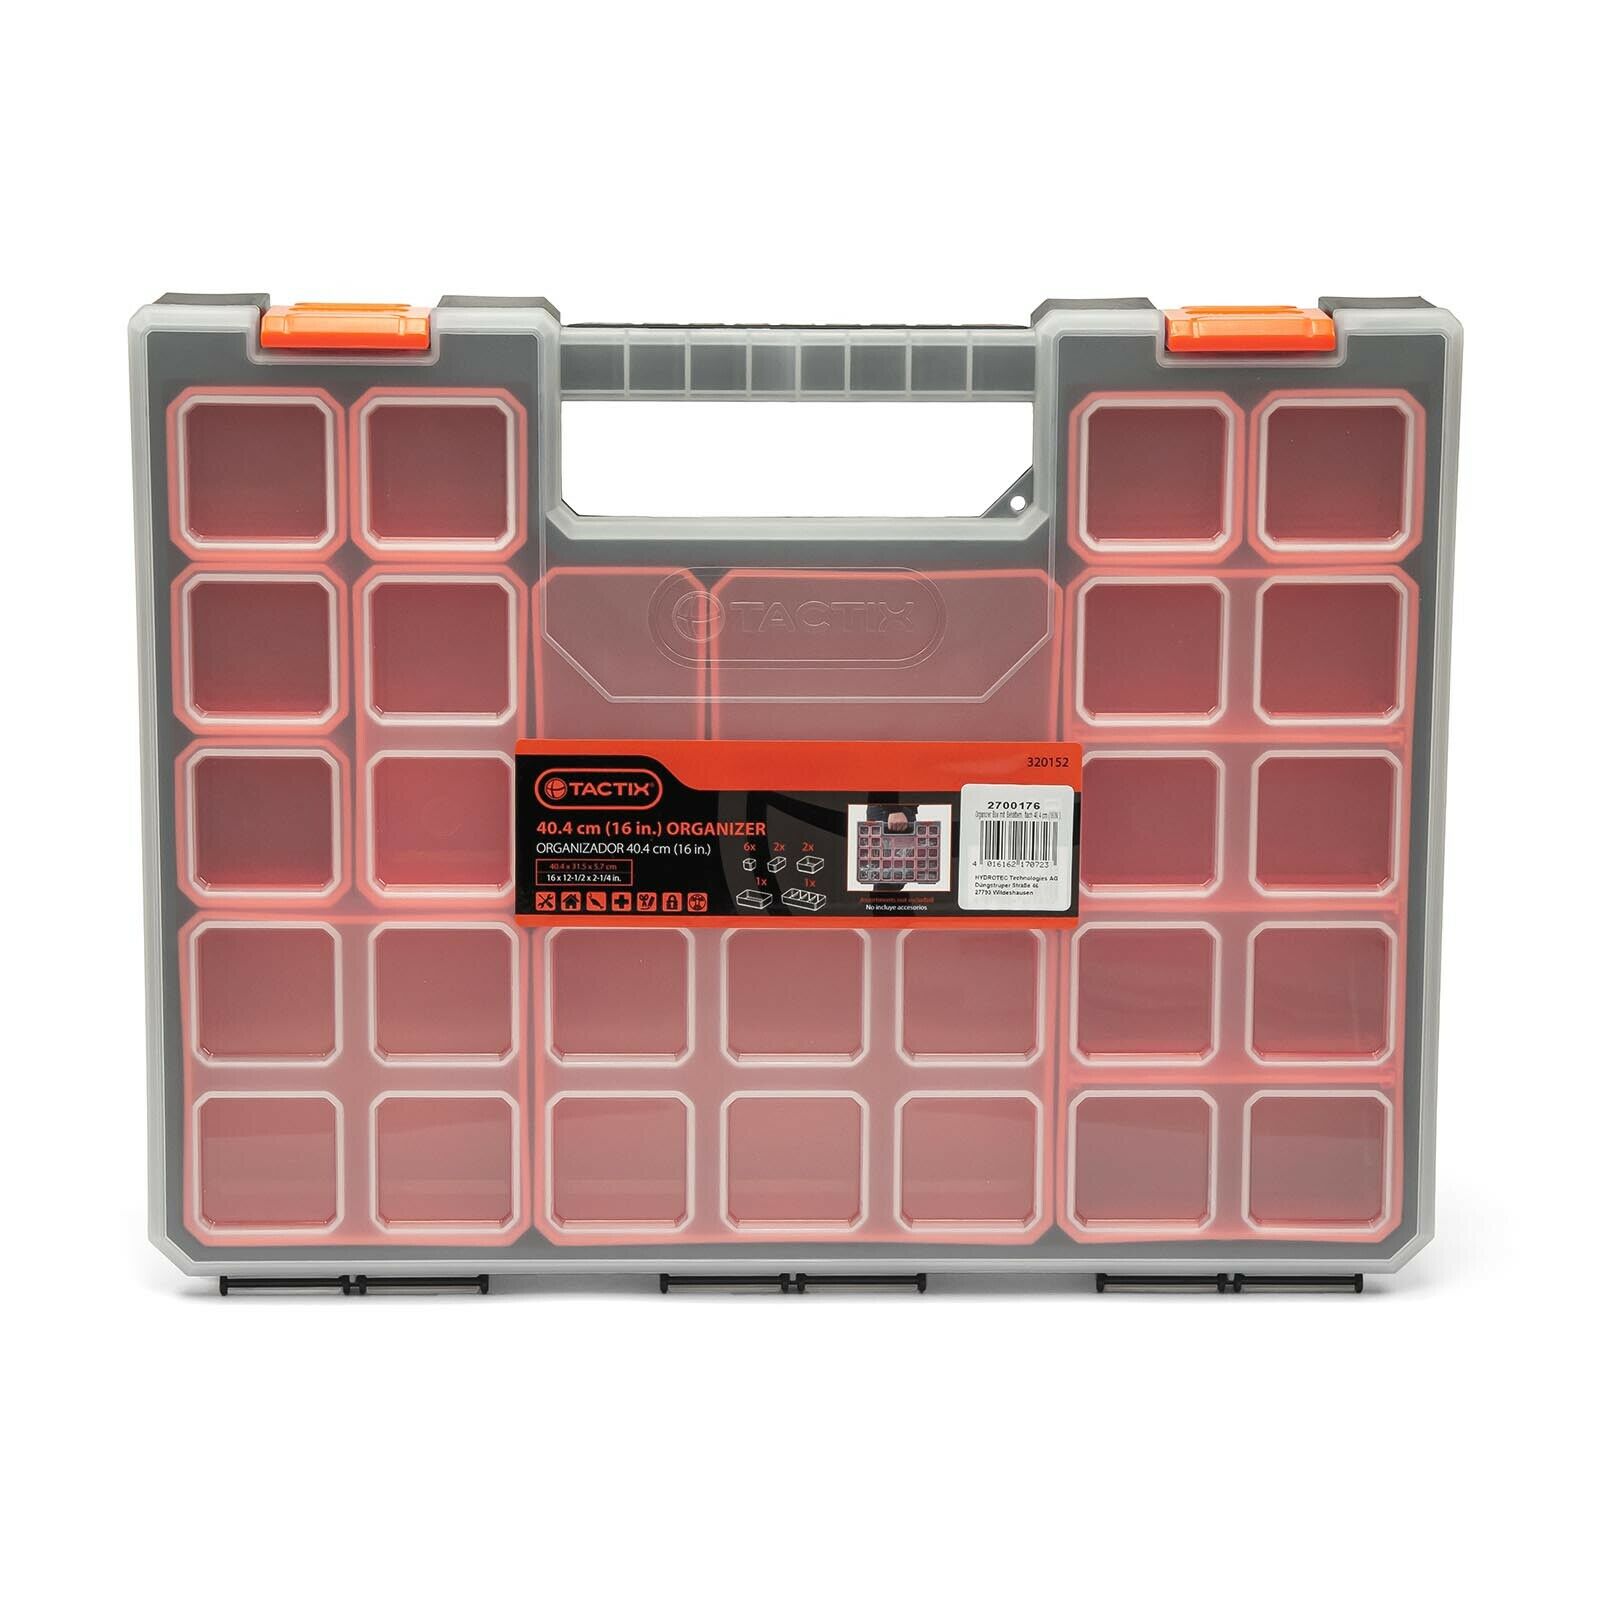 TACTIX Sortimentskoffer mit entnehmbaren Behältern - flach 40,4 cm